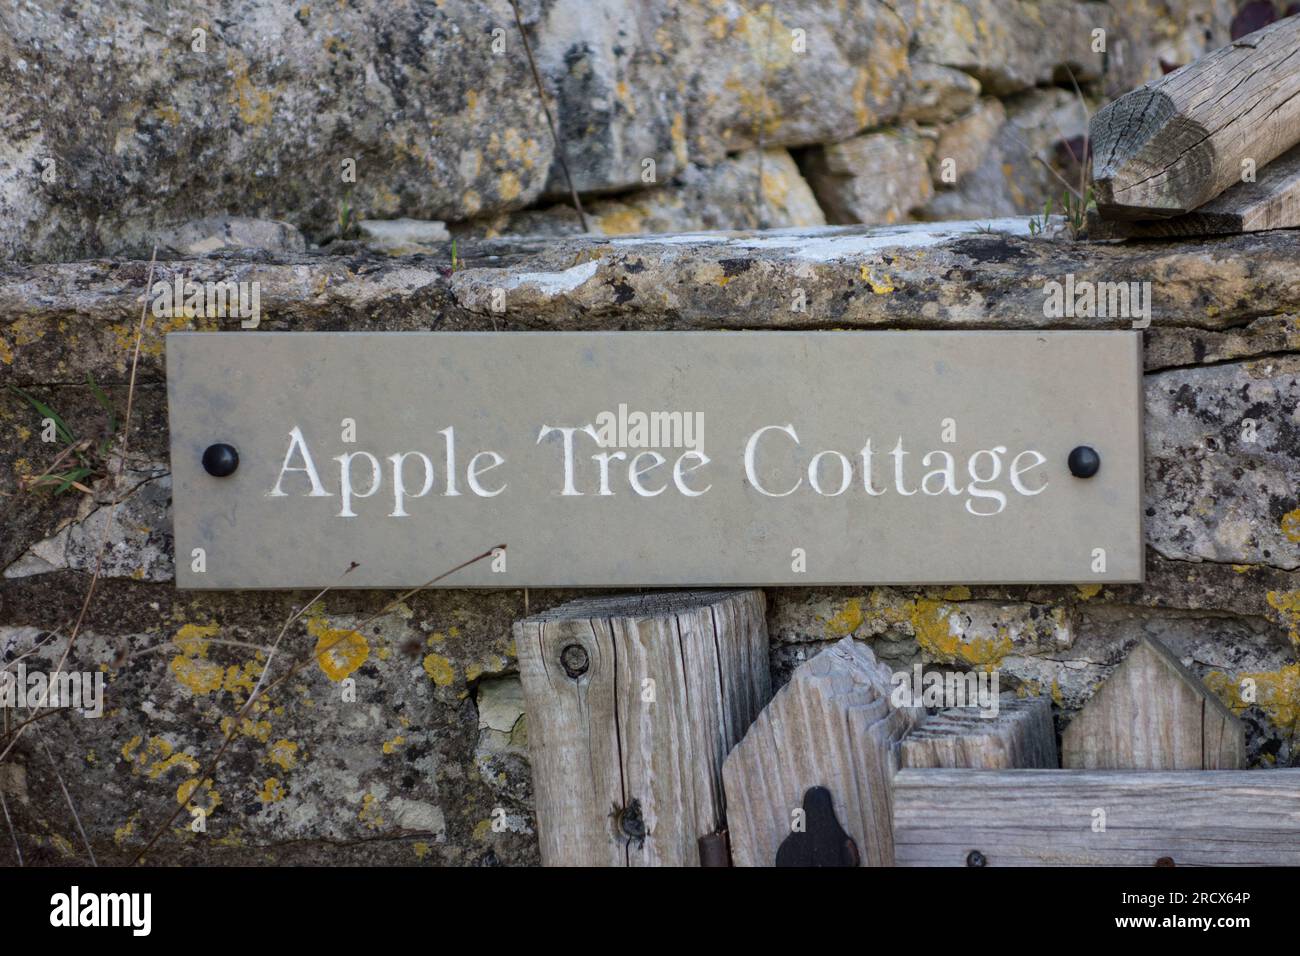 Apple Tree Cottage, Gloucestershire, UK Stock Photo